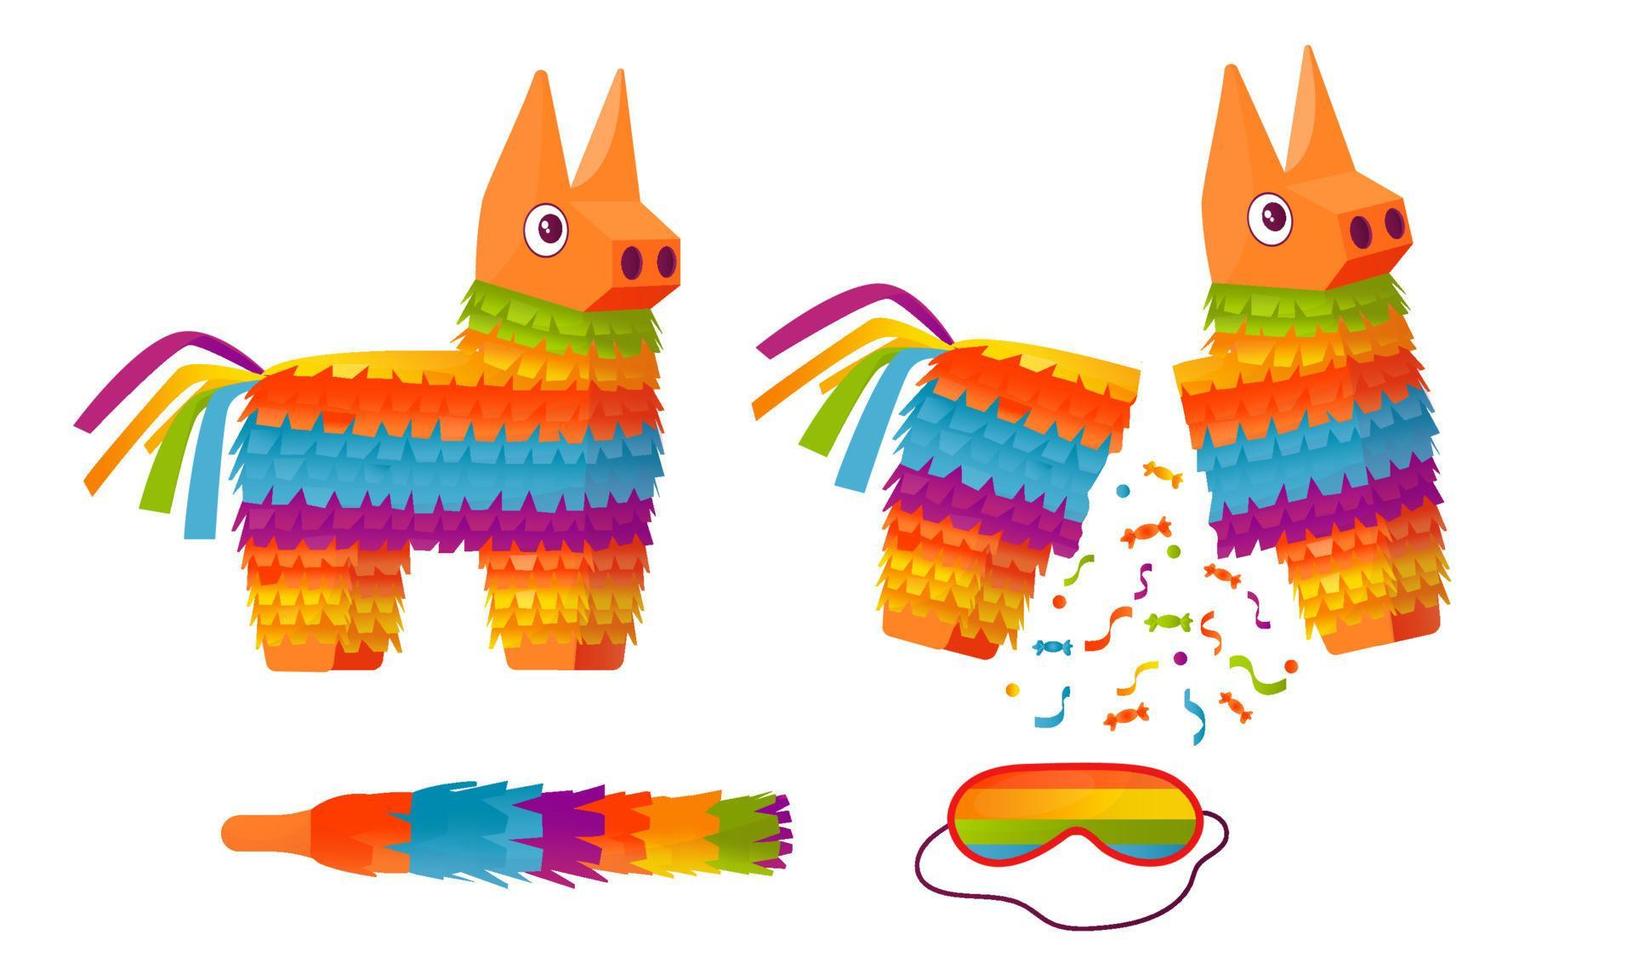 771 imágenes, fotos de stock, objetos en 3D y vectores sobre Niños piñata